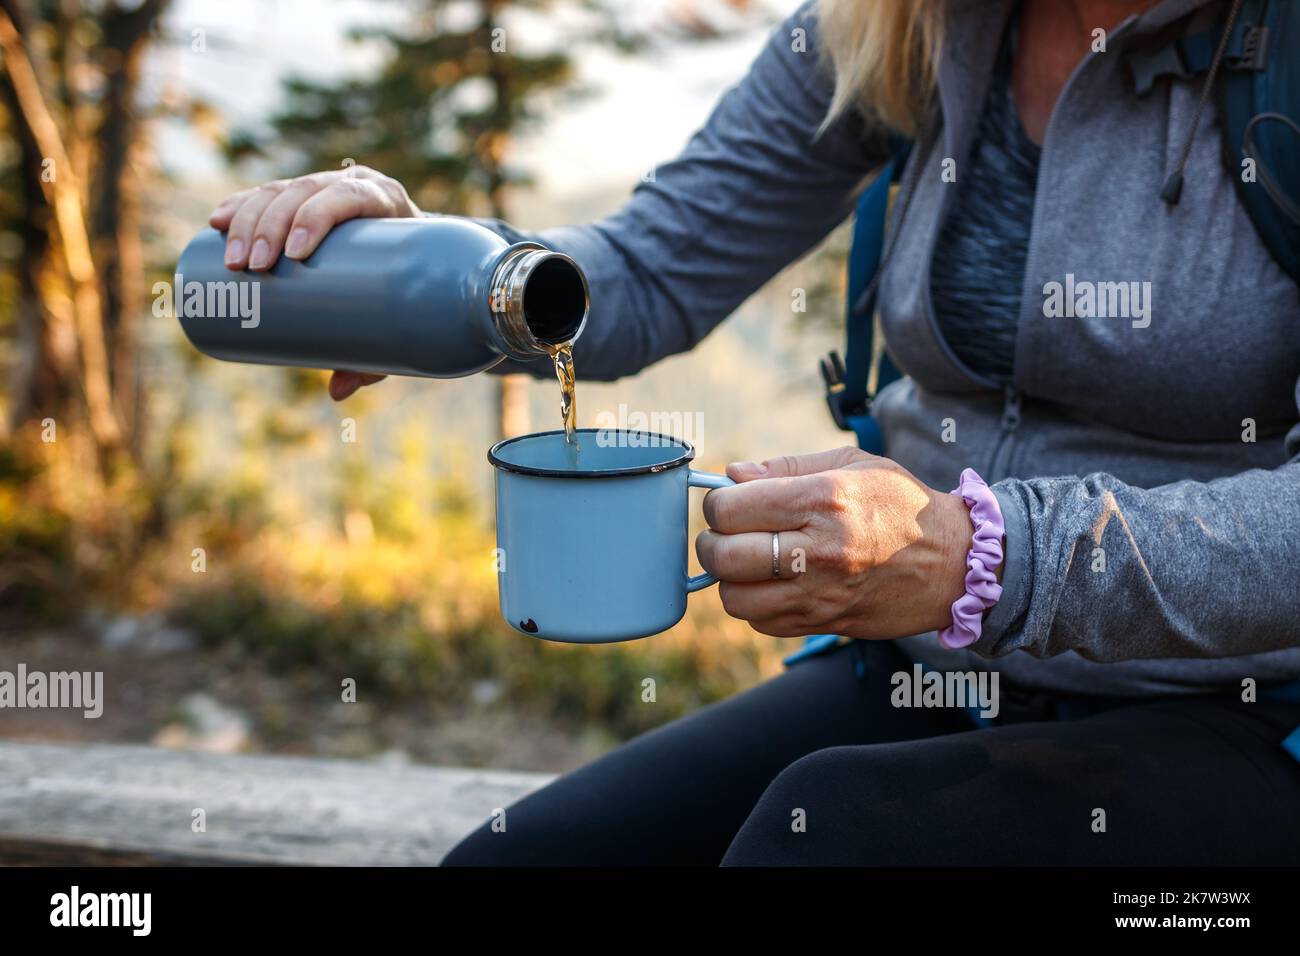 Une femme verse une boisson à base de thé dans une tasse de voyage. Rafraîchissements pendant la randonnée en forêt Banque D'Images